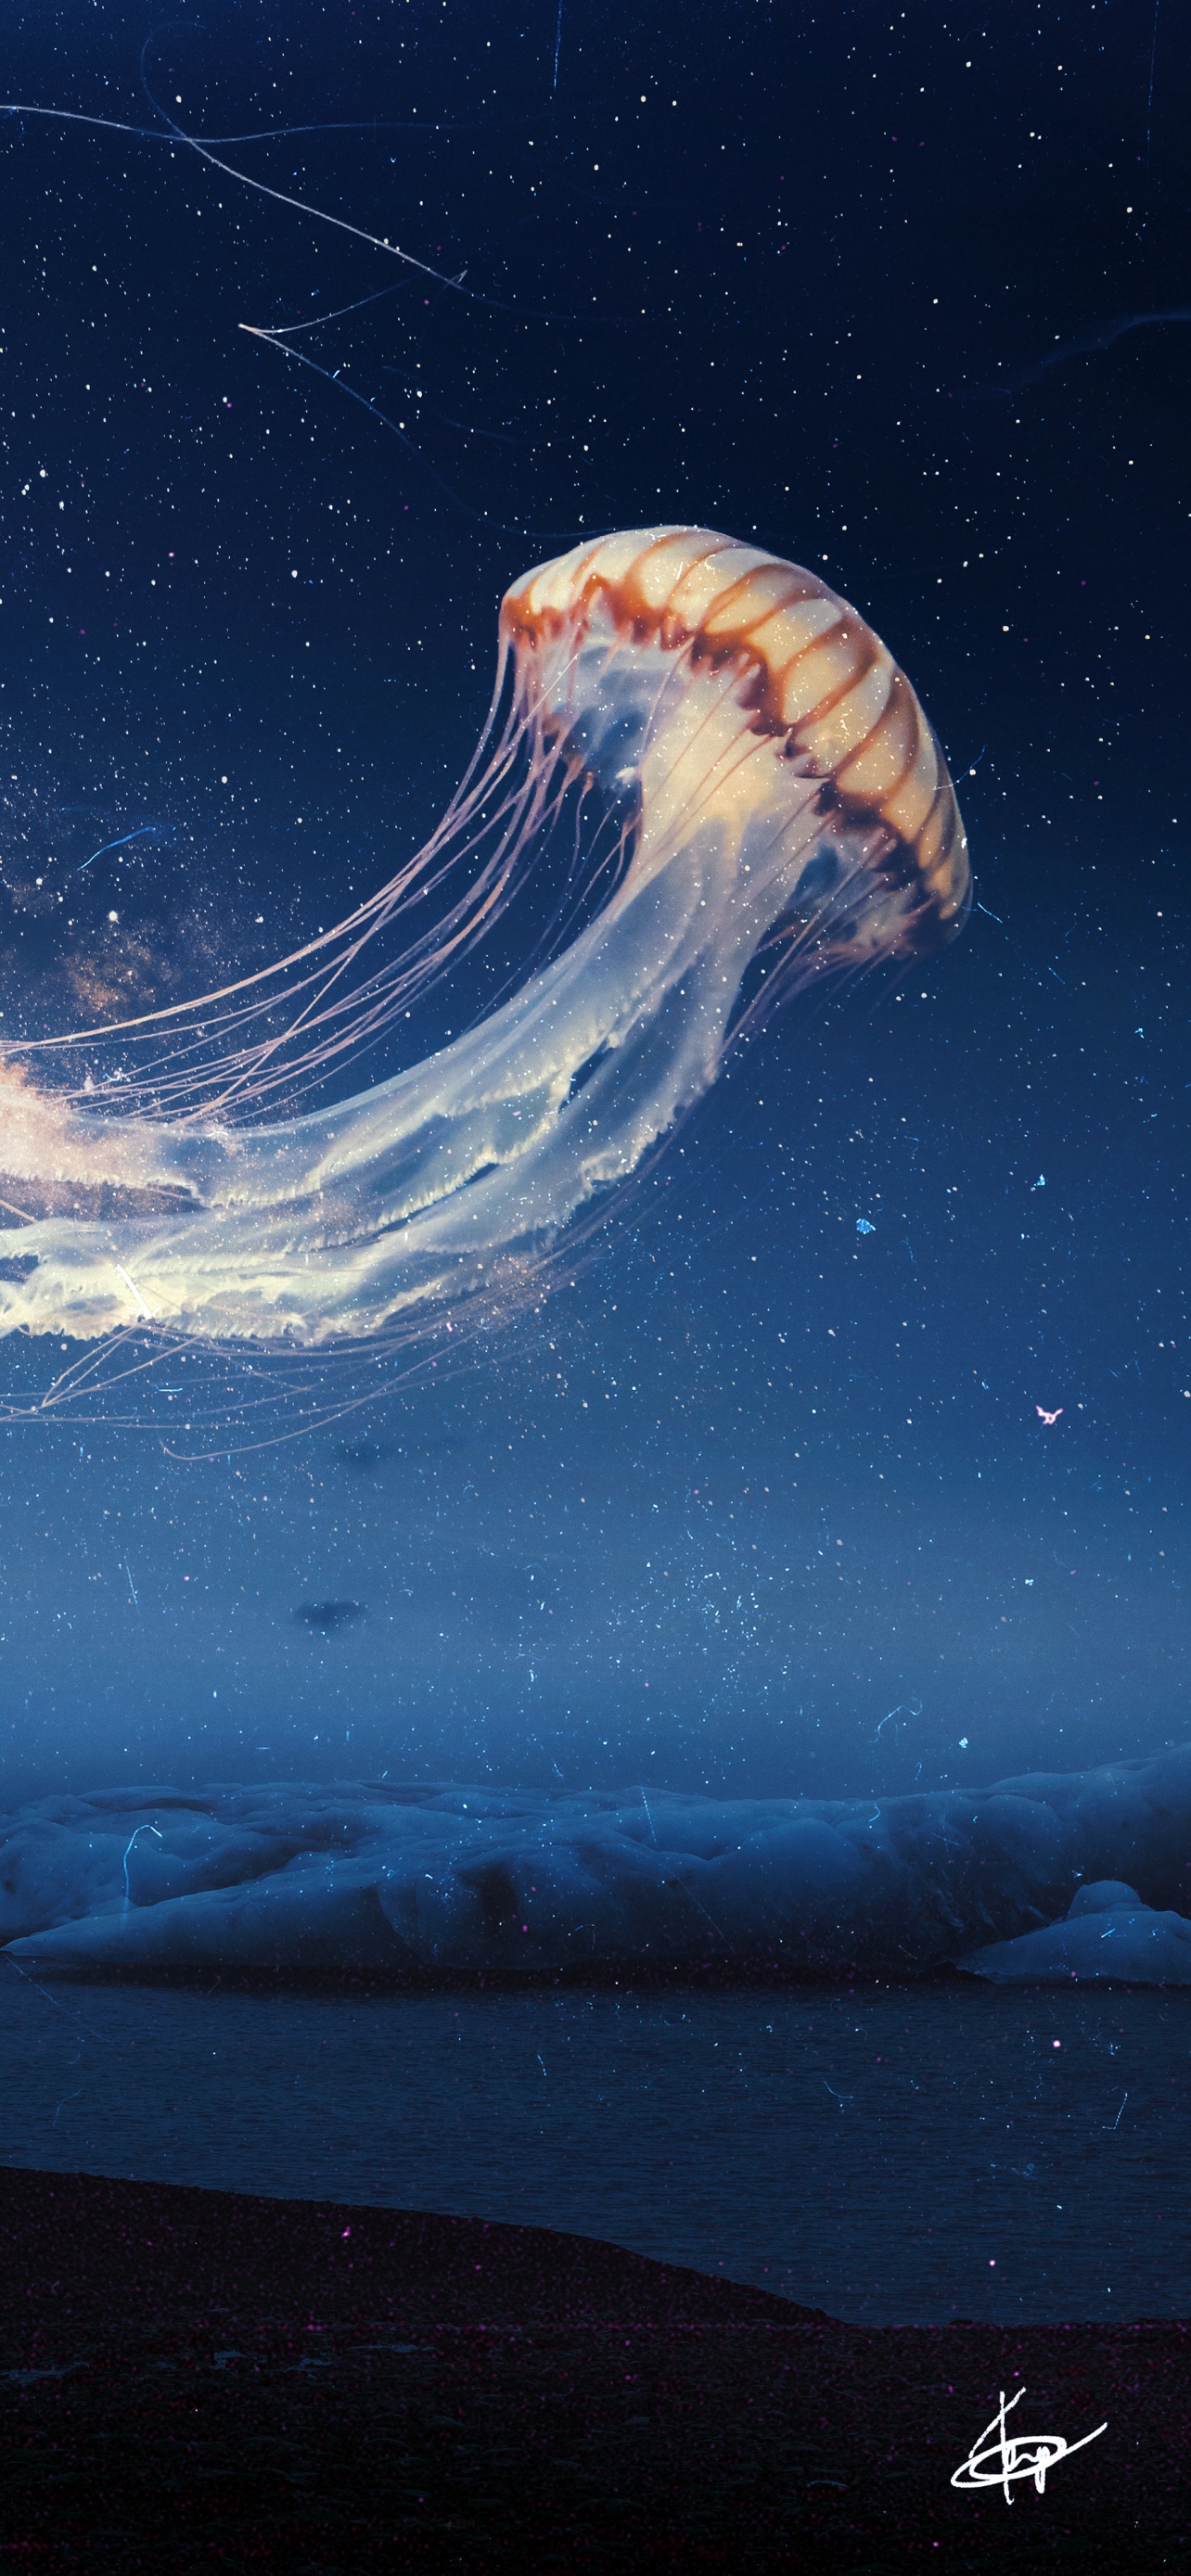 Jellyfish Wallpaper 4K, Dream, Surreal, Fantasy, #1062